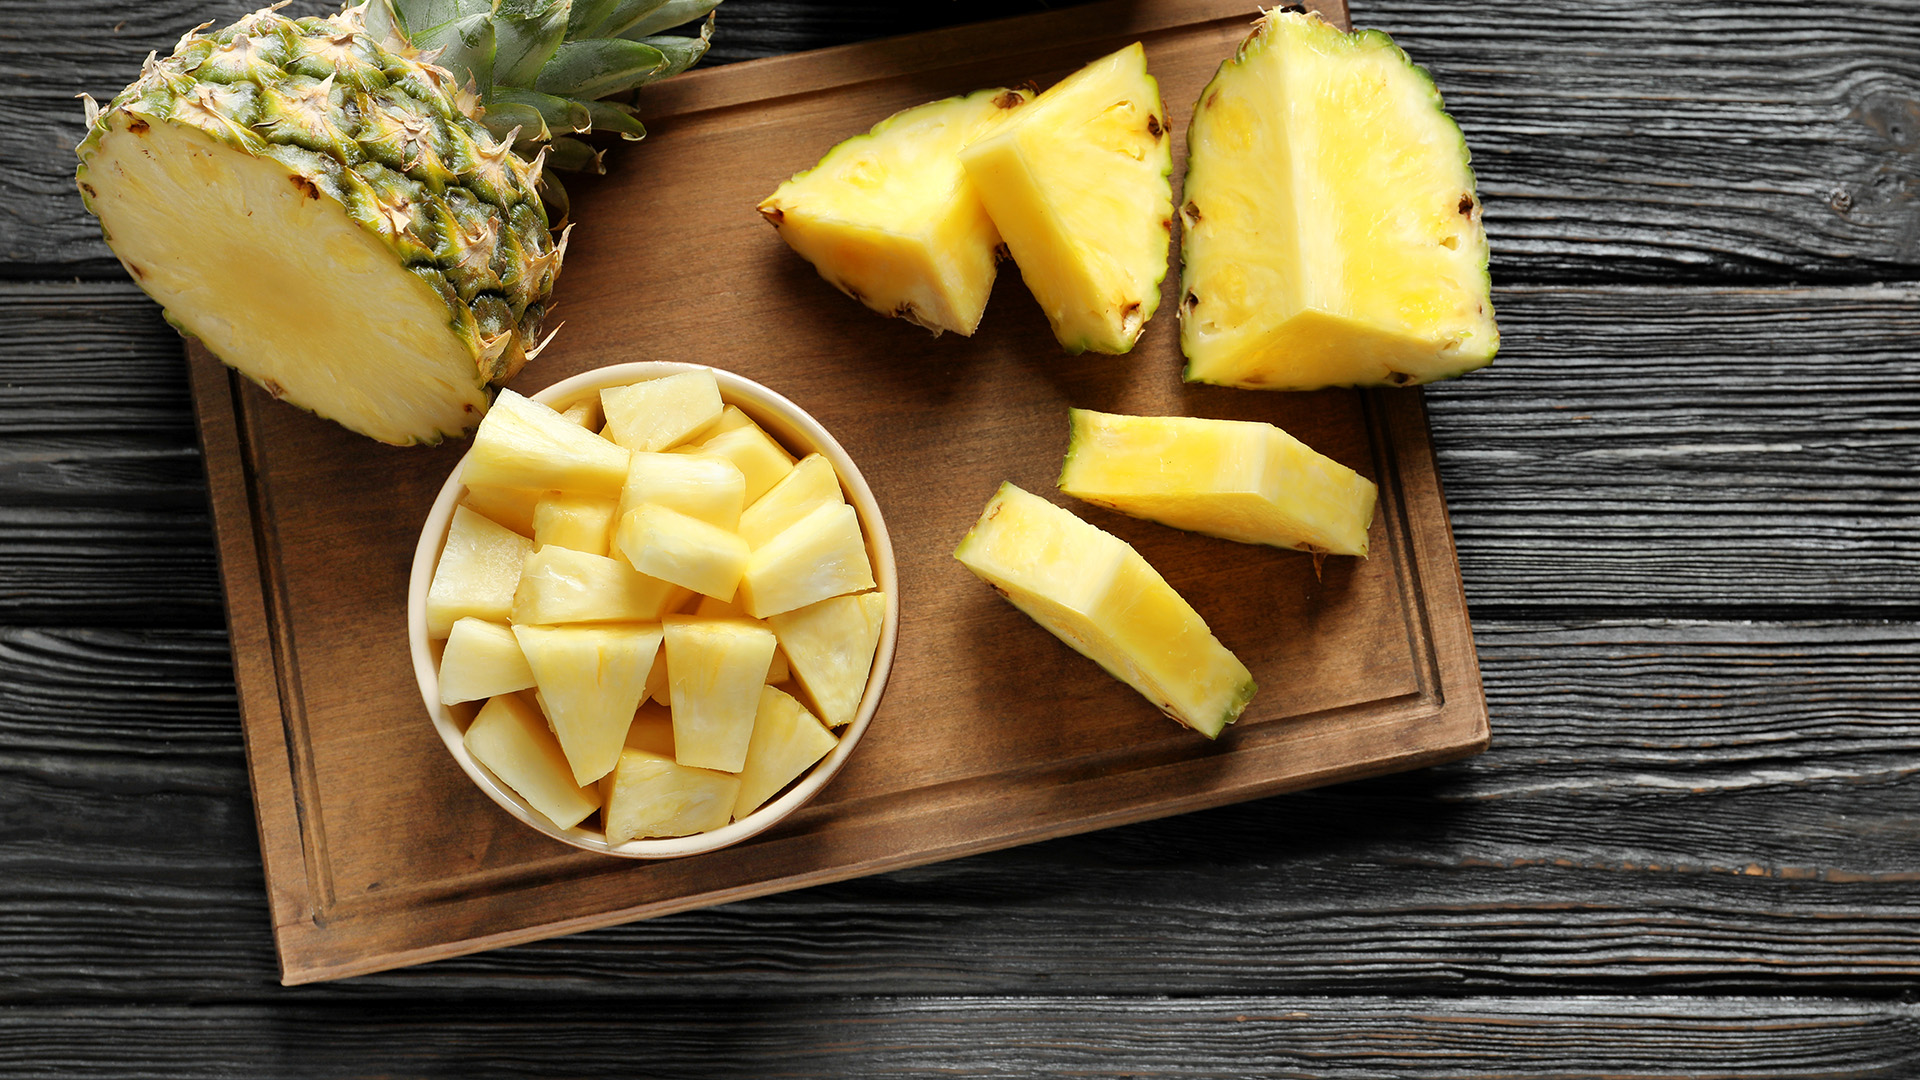 Prečo nás pri jedení ananásu páli jazyk? Lekár na internete prezradil odpoveď